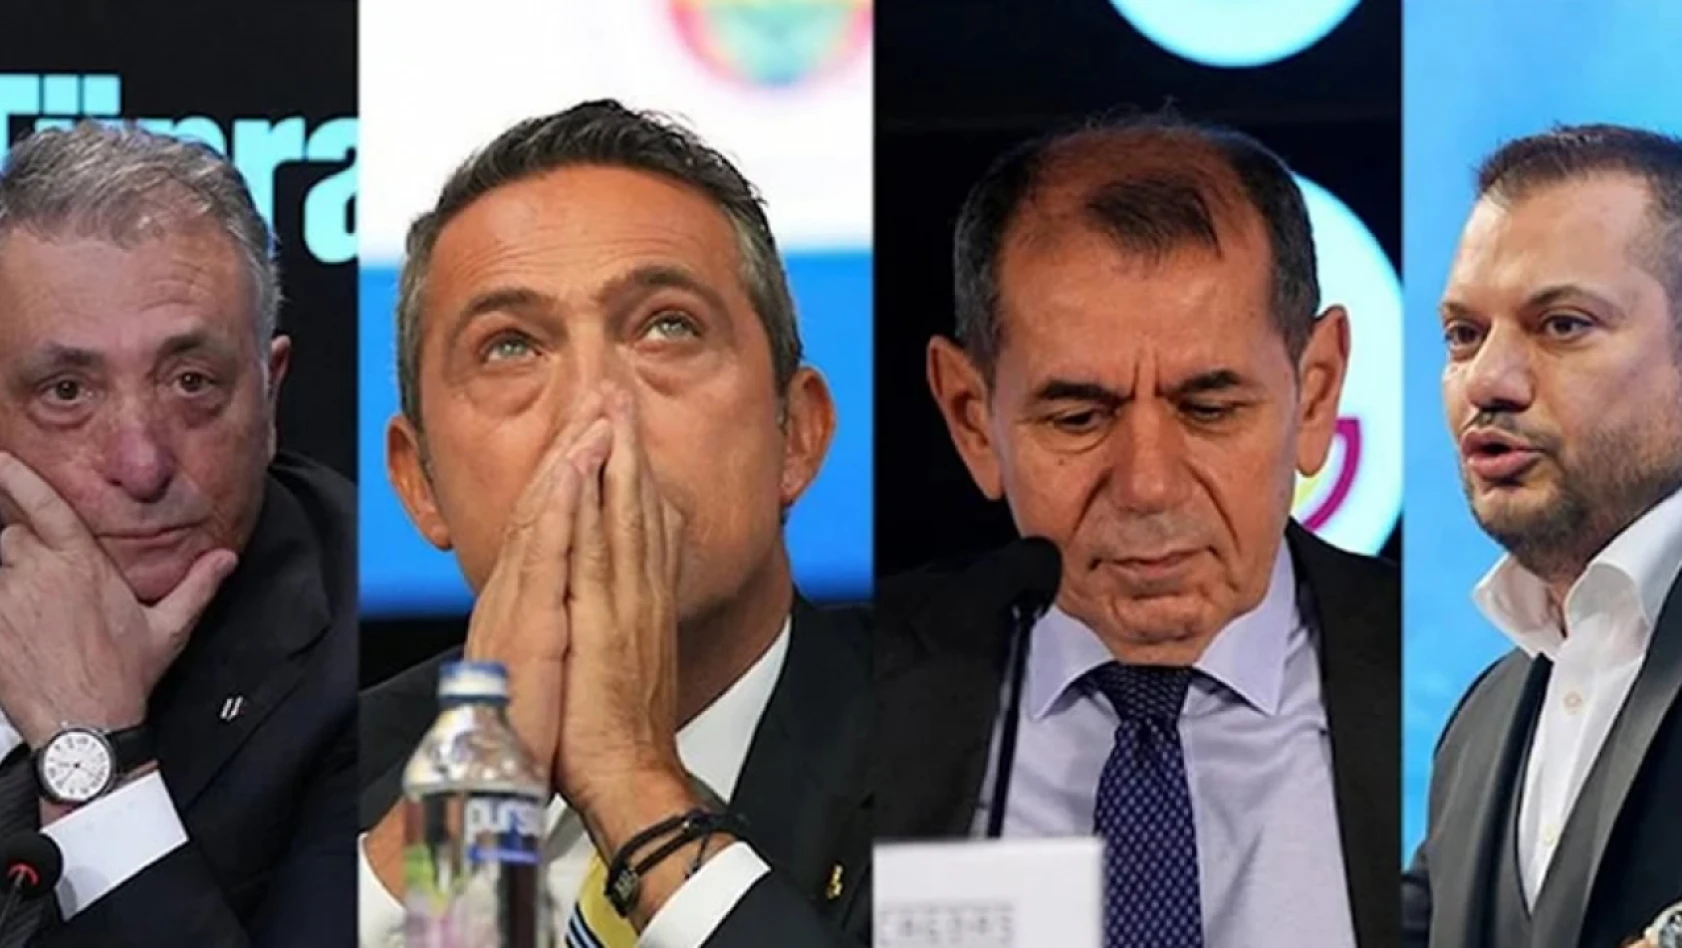 Beşiktaş, Fenerbahçe, Galatasaray ve Trabzonspor'un borcu dudak uçuklattı